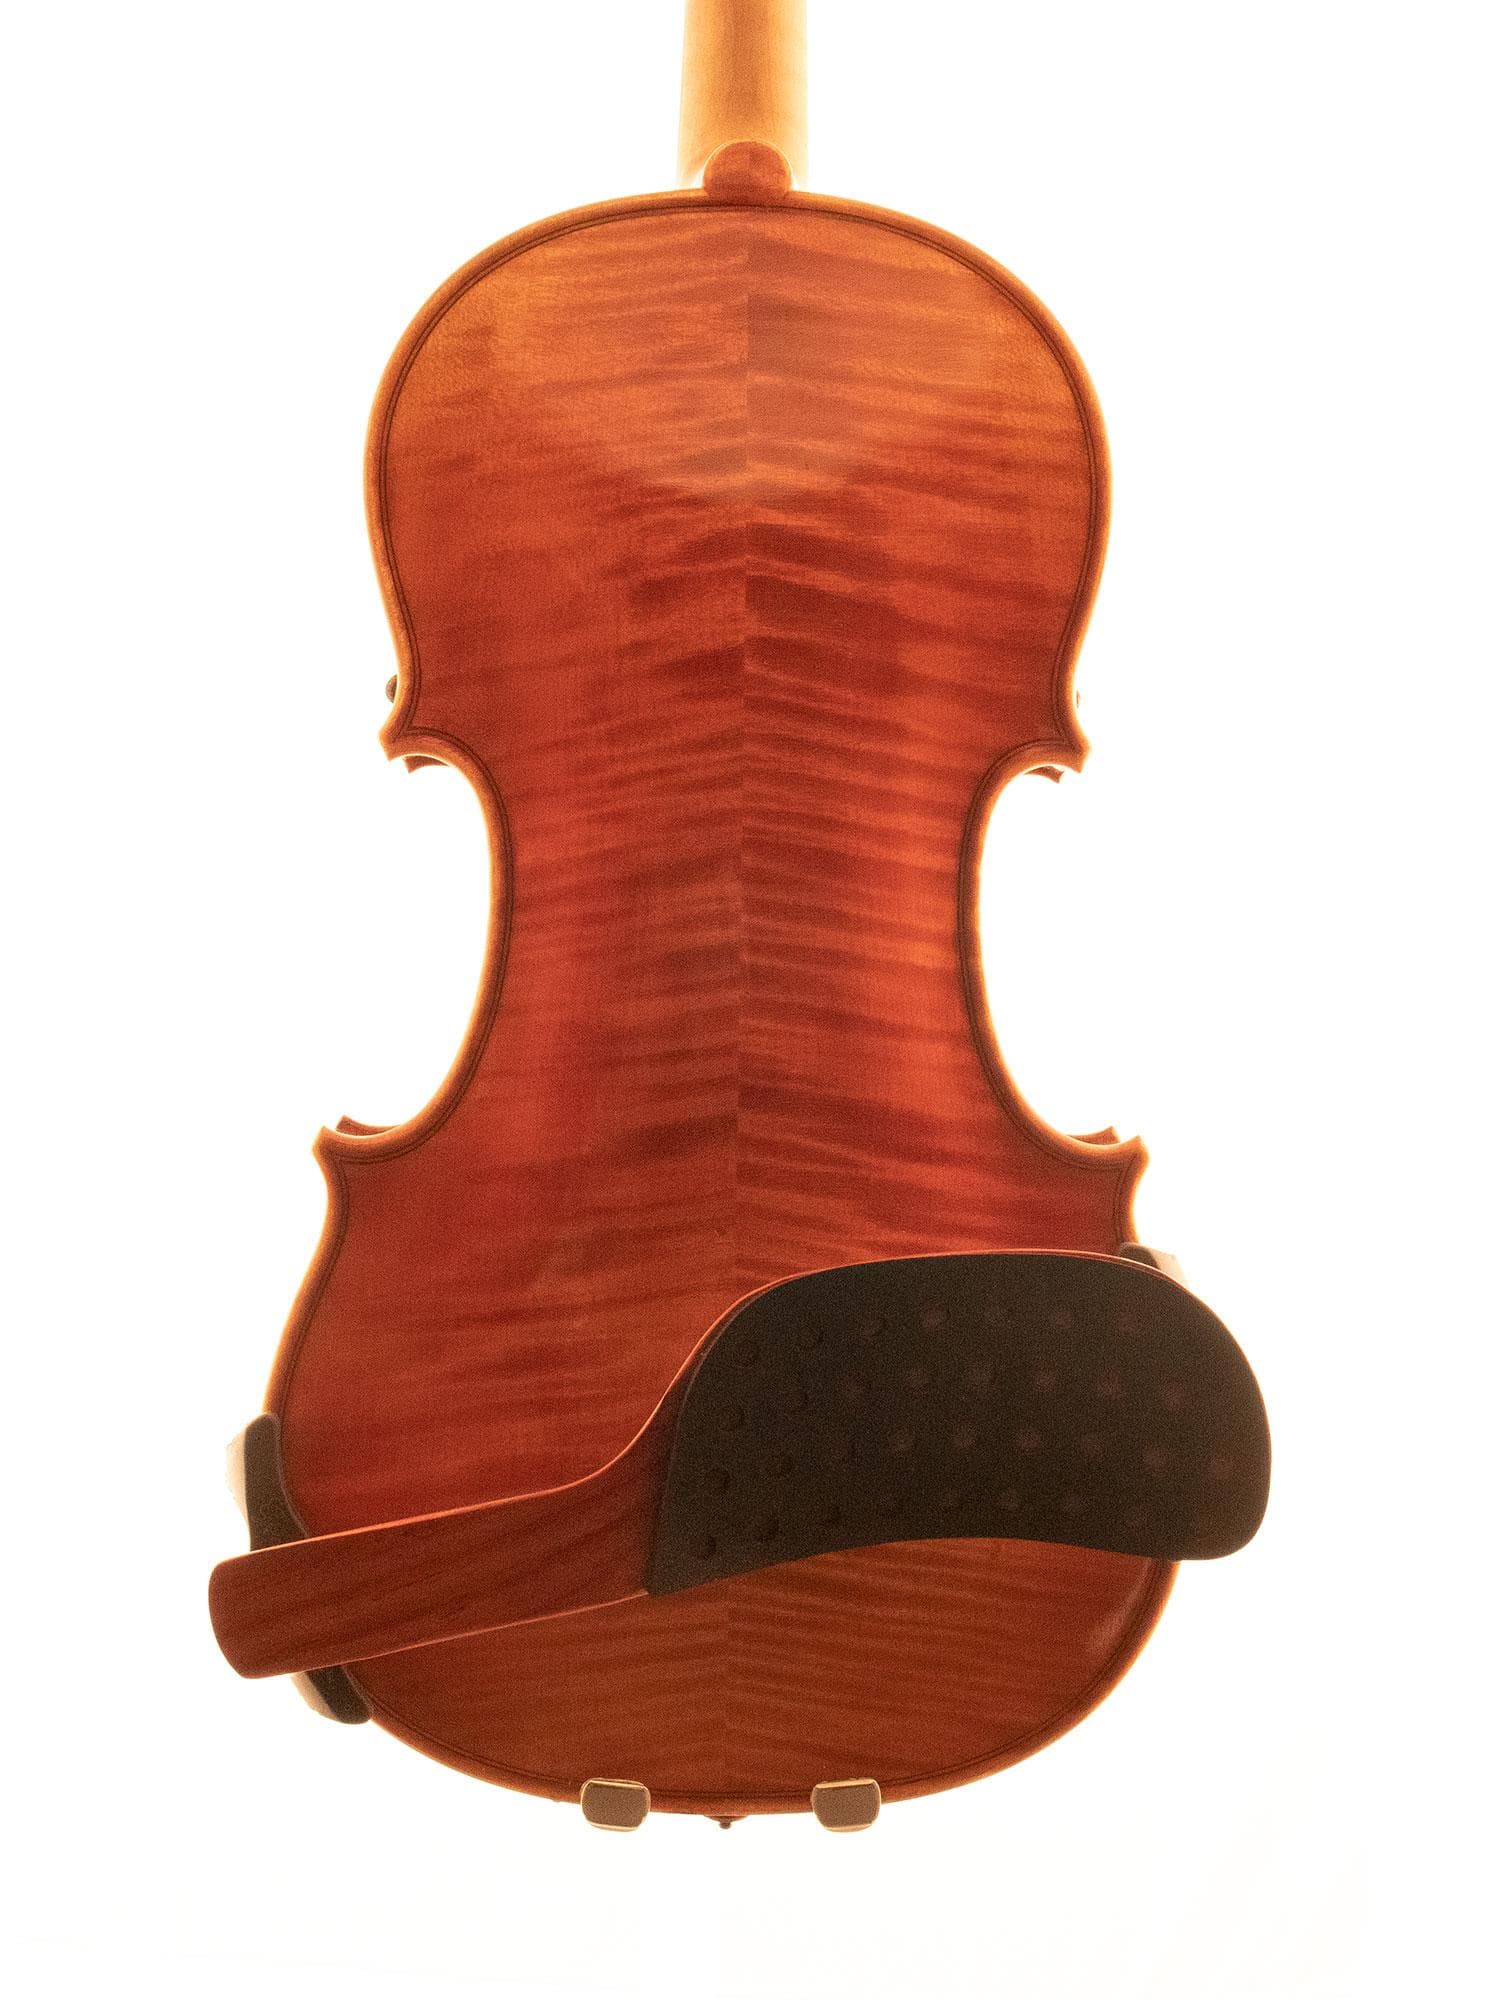 Performa Padauk Wood Violin Shoulder Rest in 4/4 Size